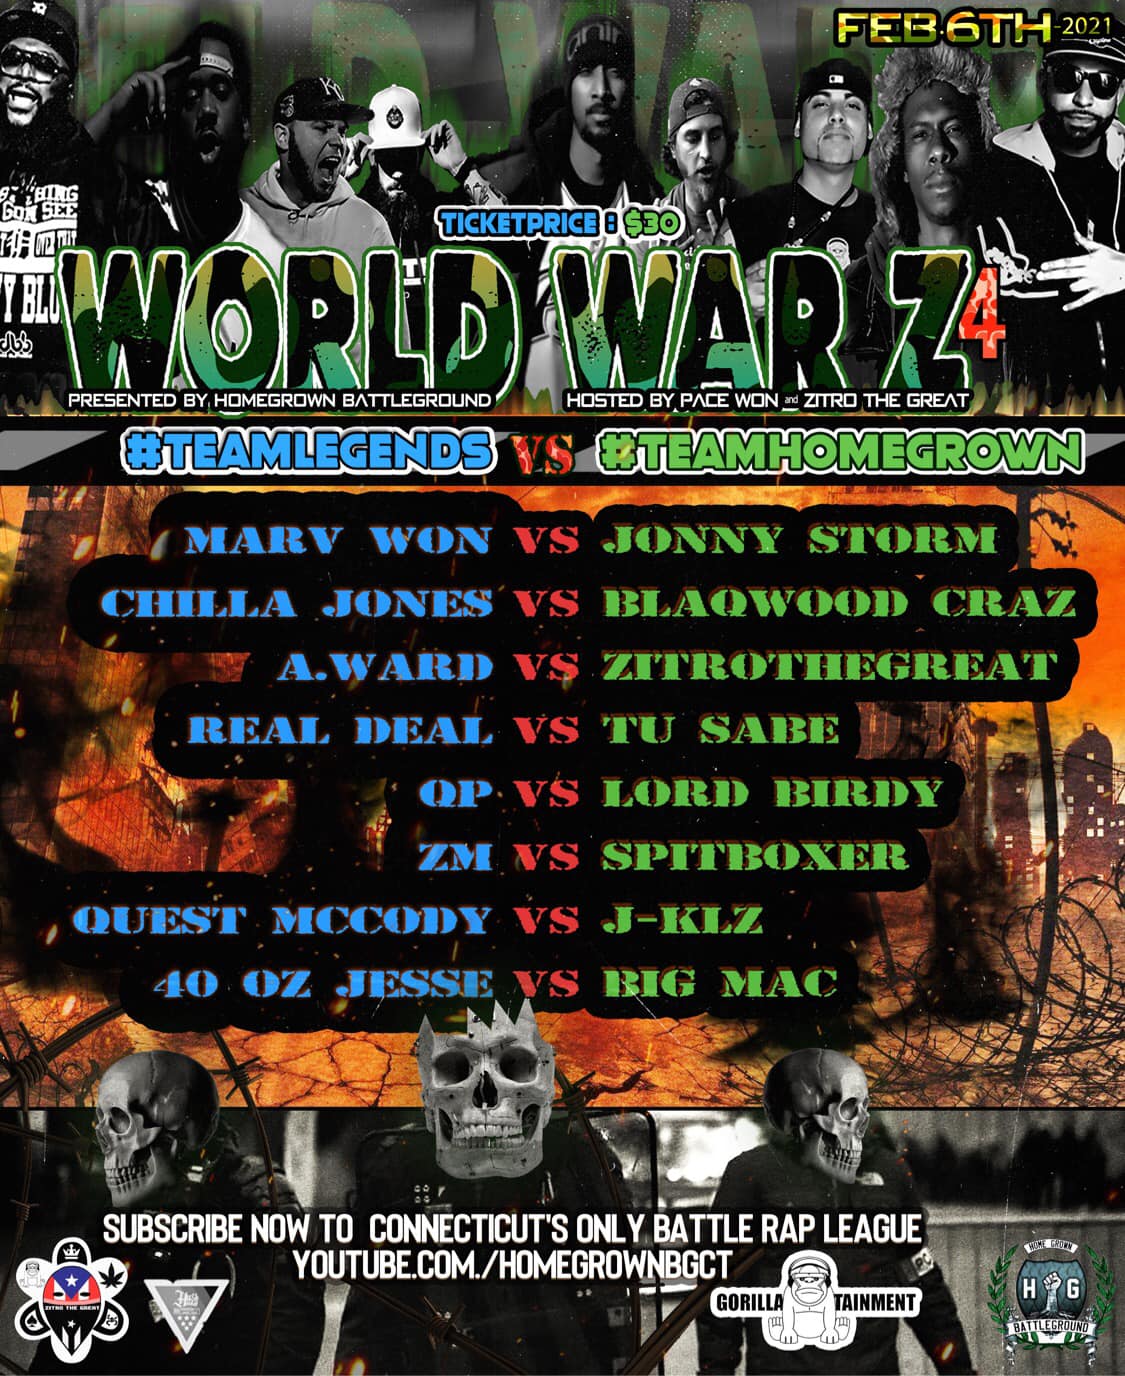 World War Z 4 Home Grown Battle Ground Battle Rap Event Versetracker